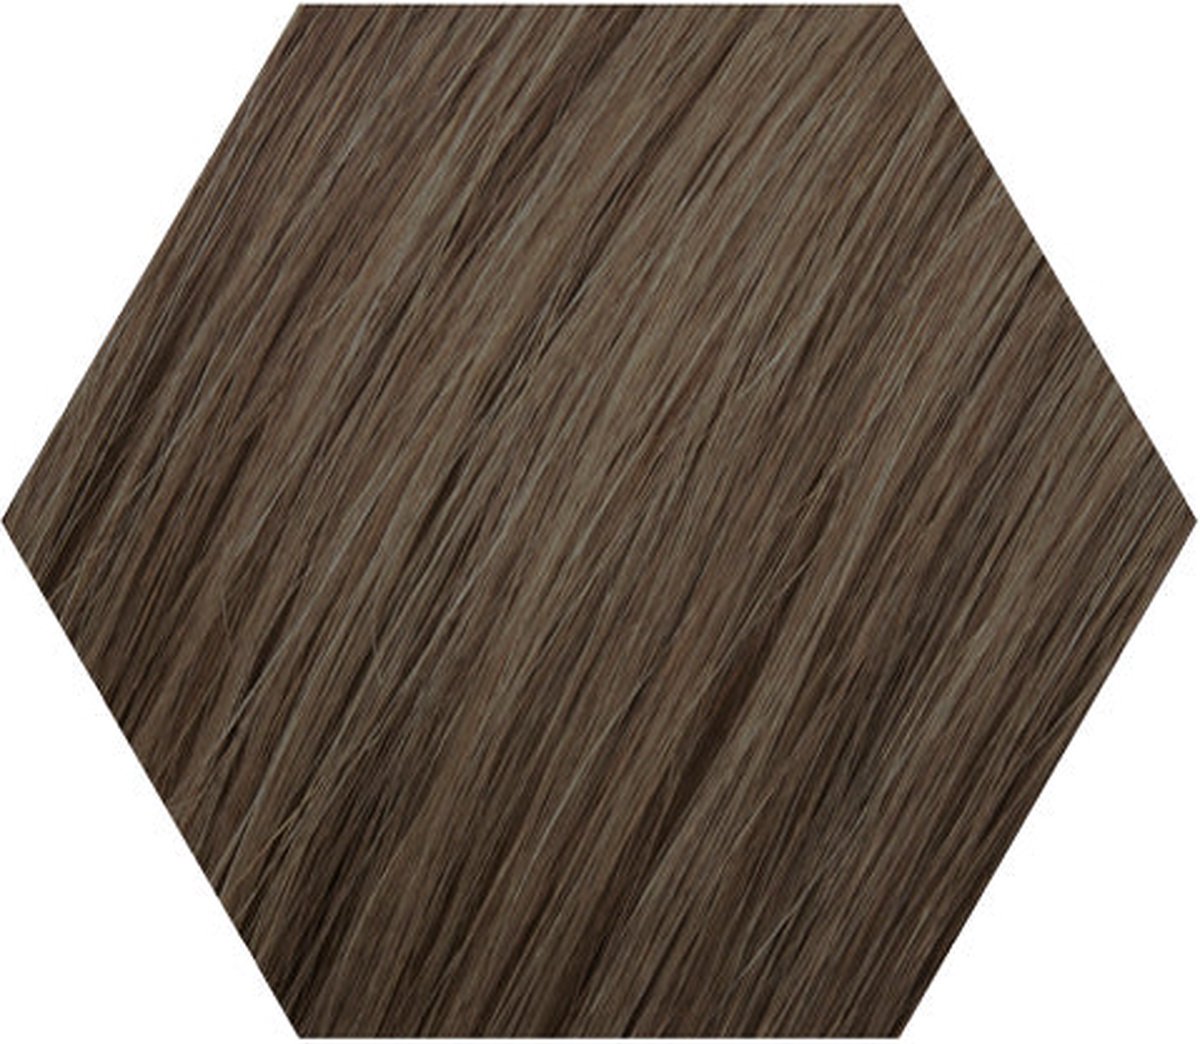 Wecolour - Kleuring - Haarkleuring - Haarkleur - As donkerblond 7.1 - Kapperskwaliteit Haarverf